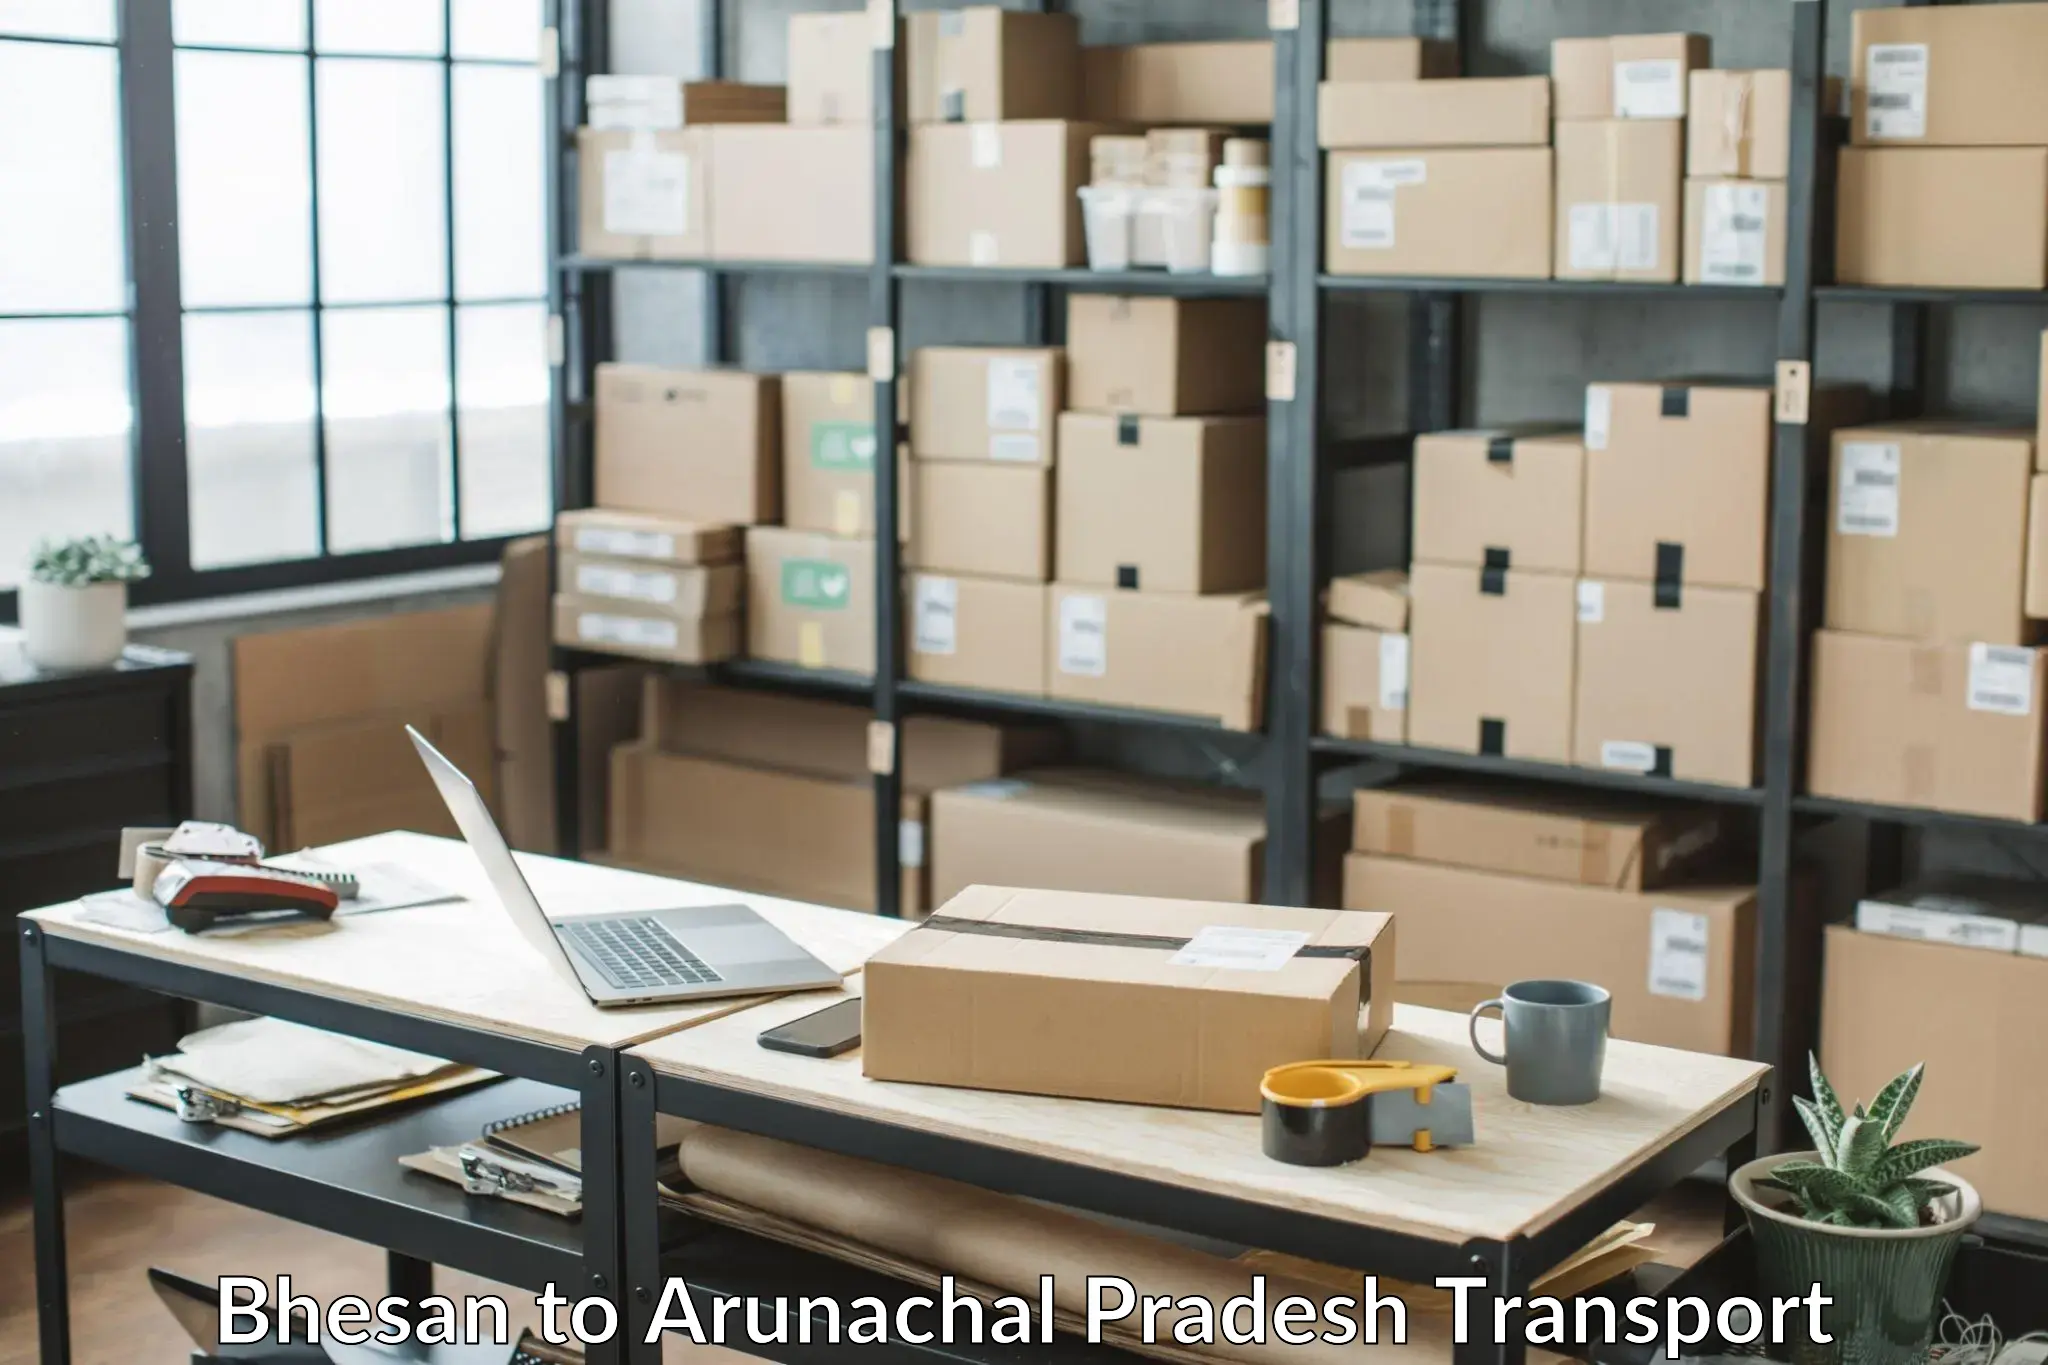 Shipping partner Bhesan to Arunachal Pradesh